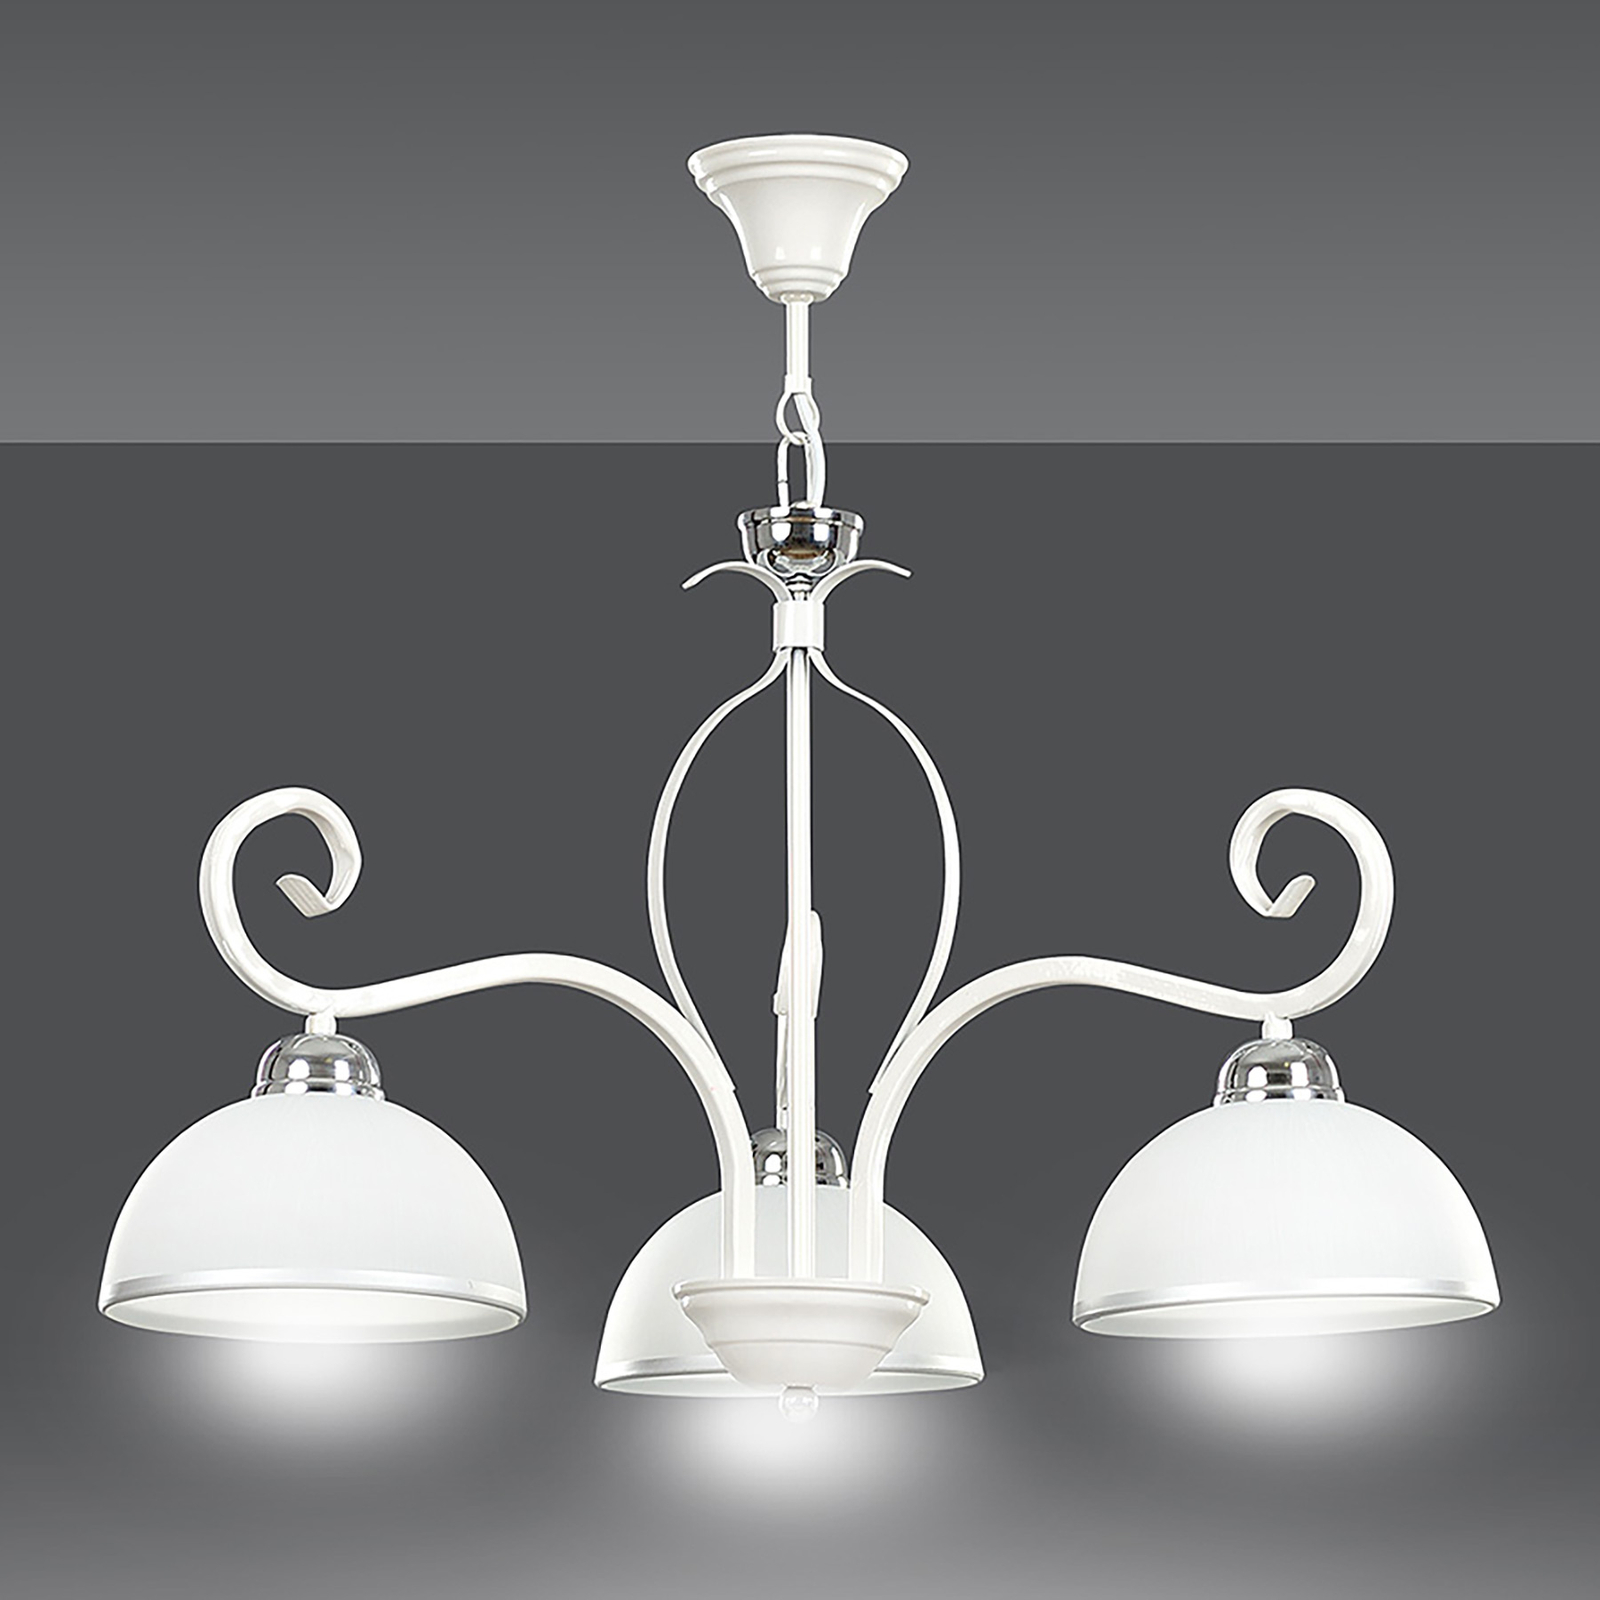 Hanglamp Wivara, 3-lamps, wit